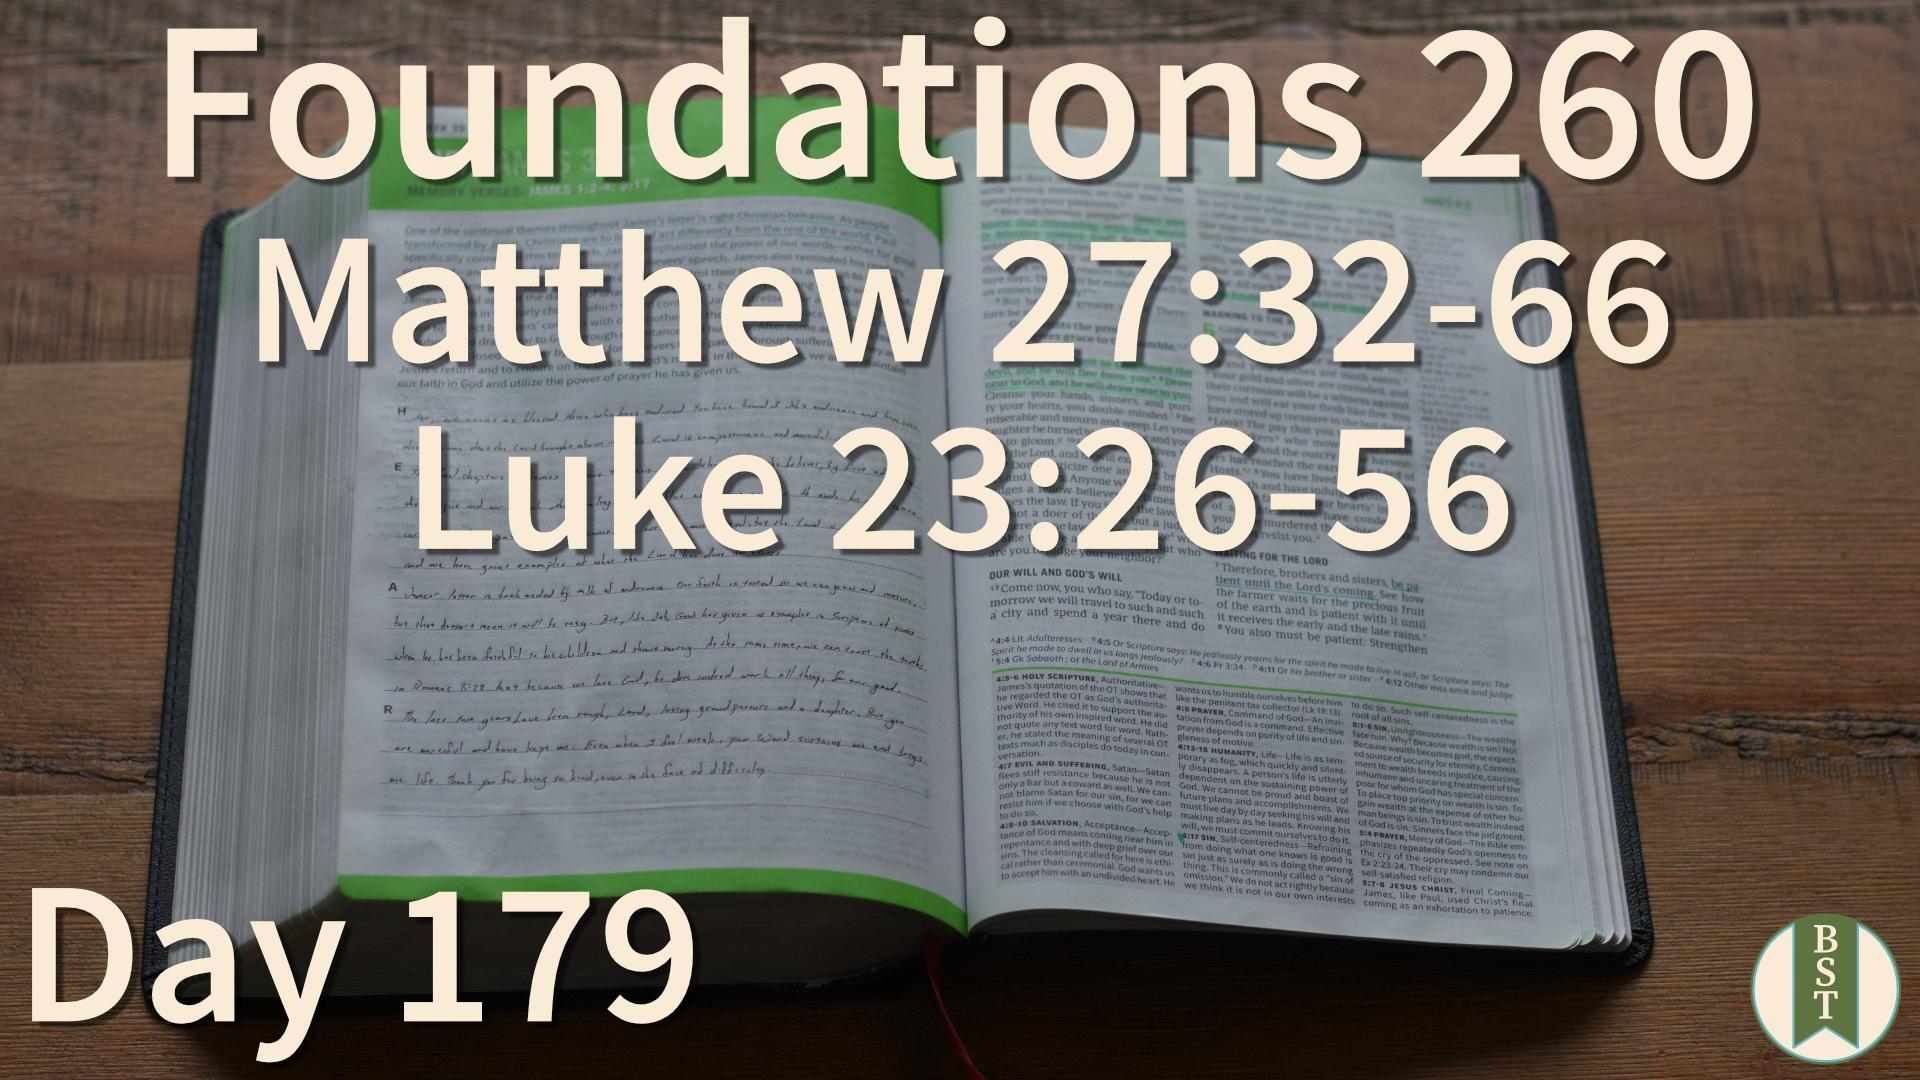 F260 Day 179: Matthew 27:32-66; Luke 23:26-56